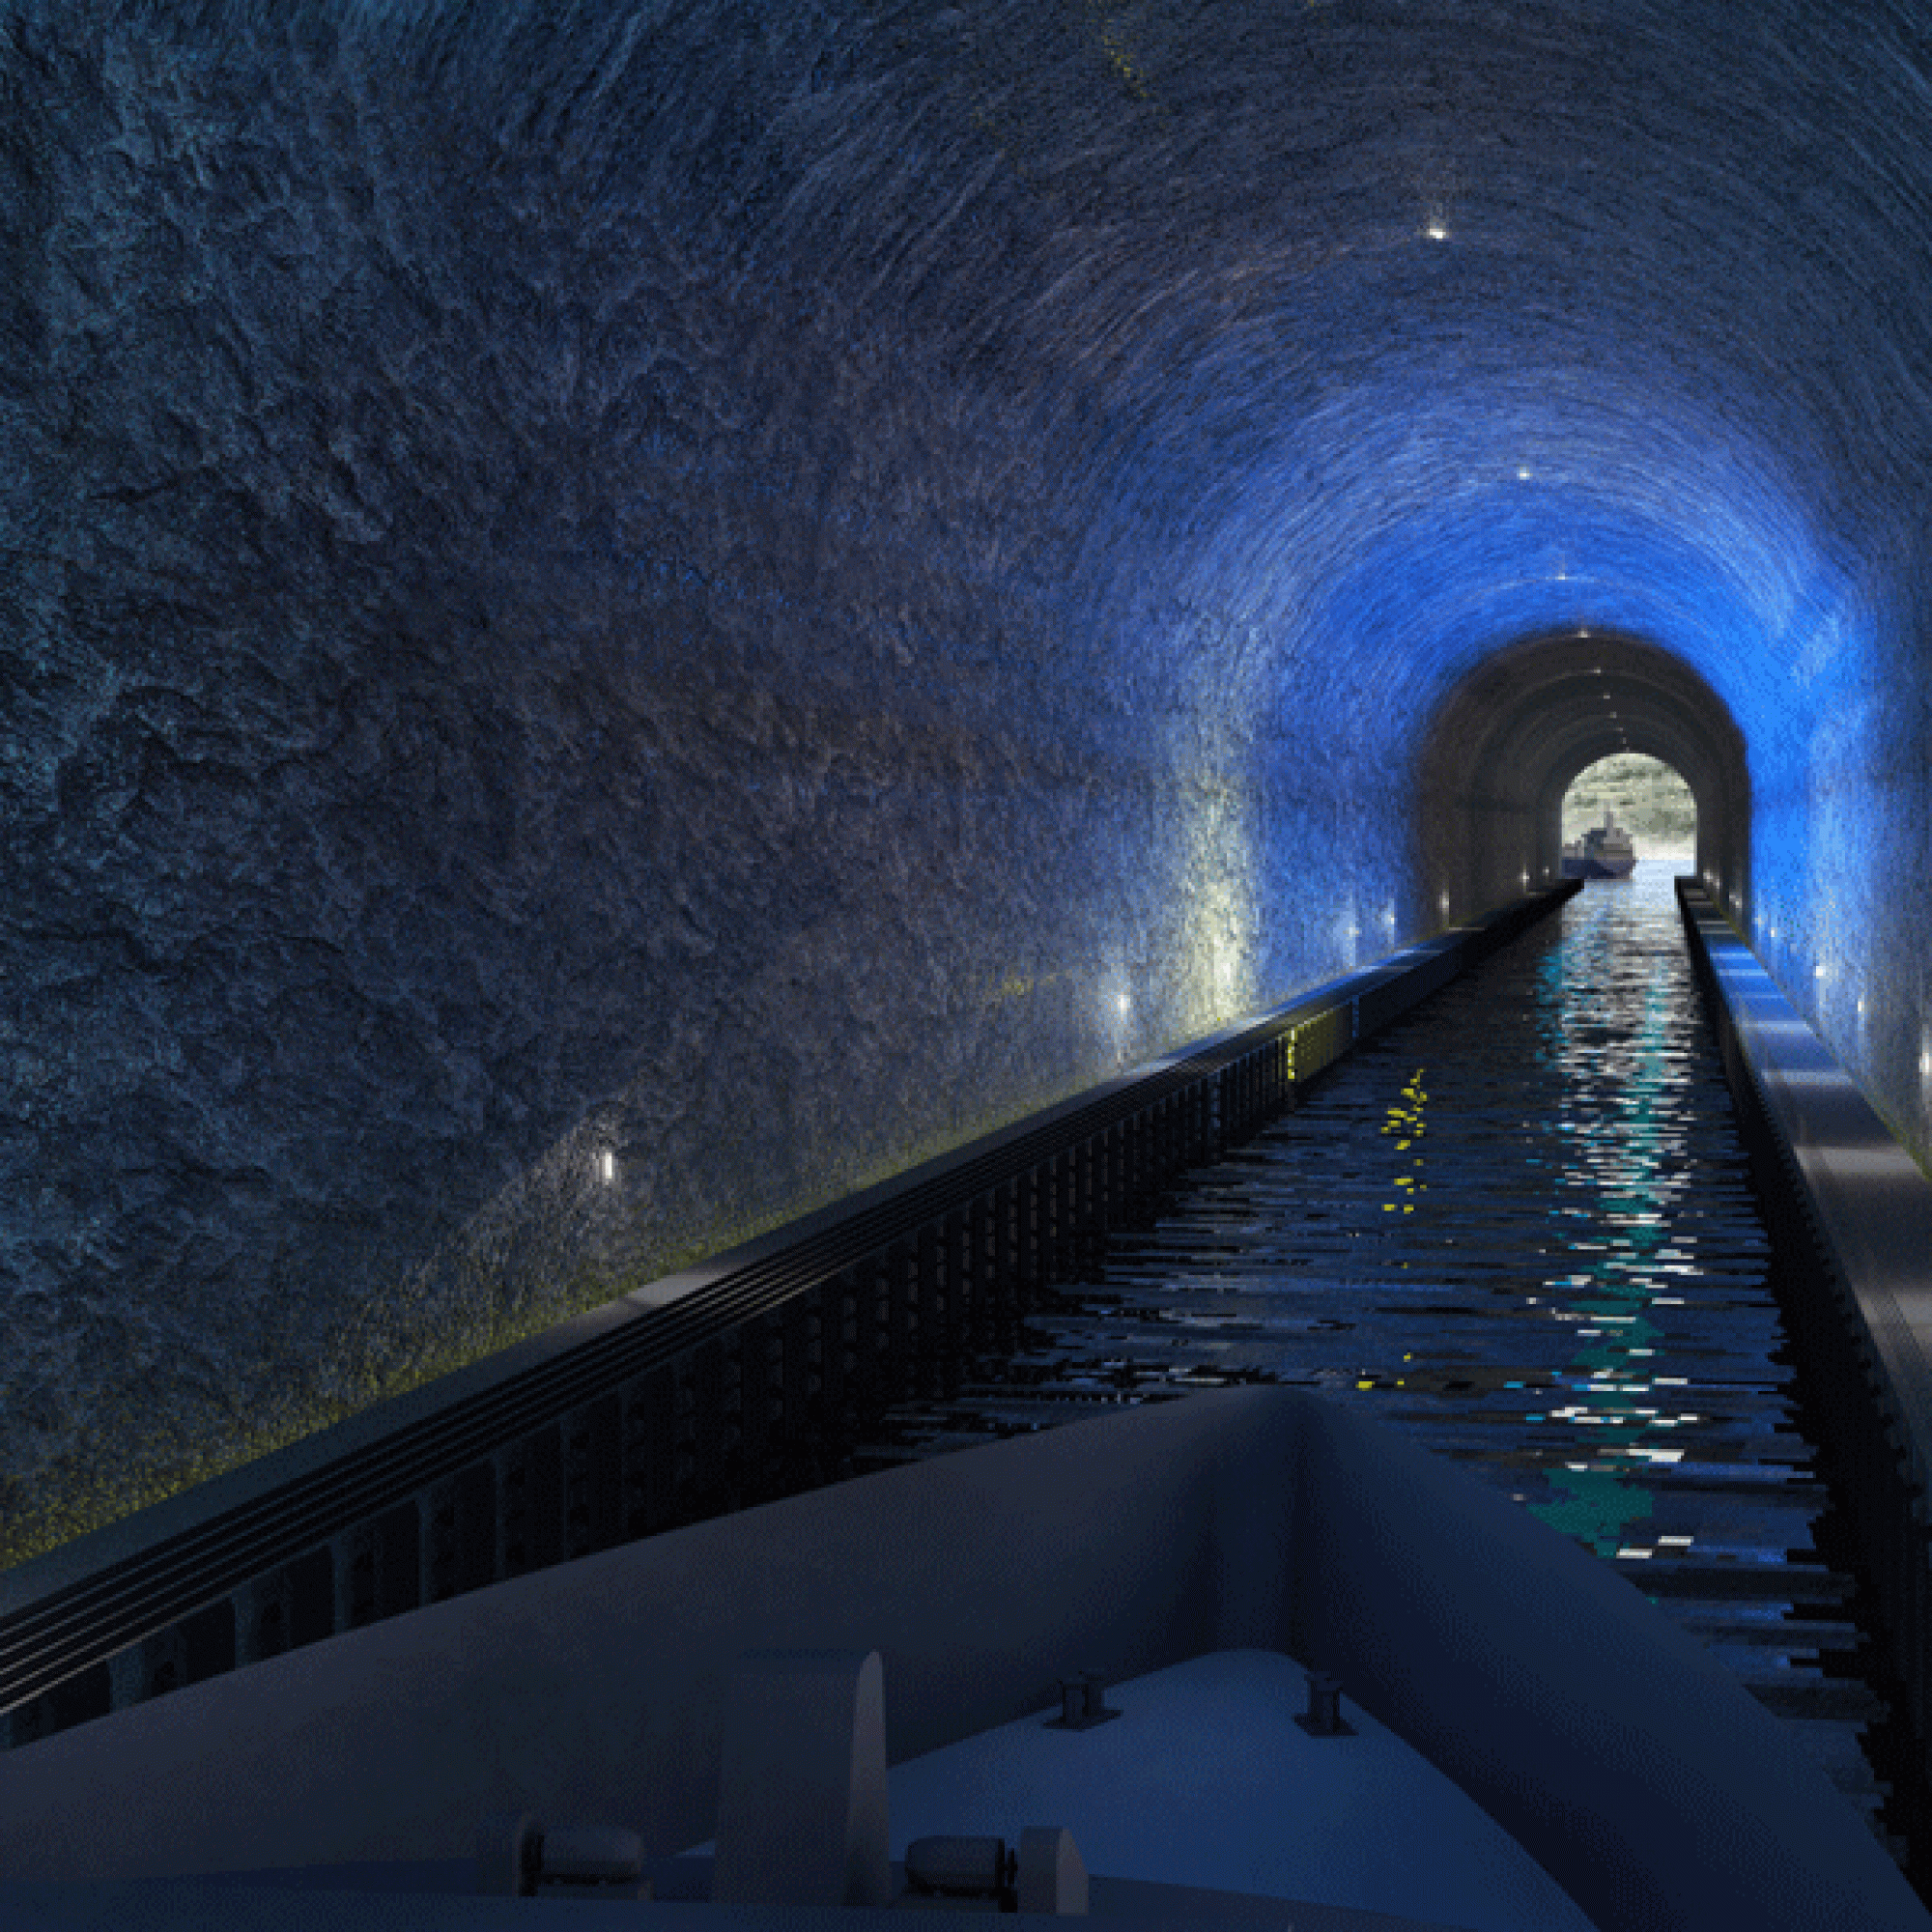 Eine Visualisierung vom Inneren des Tunnels.